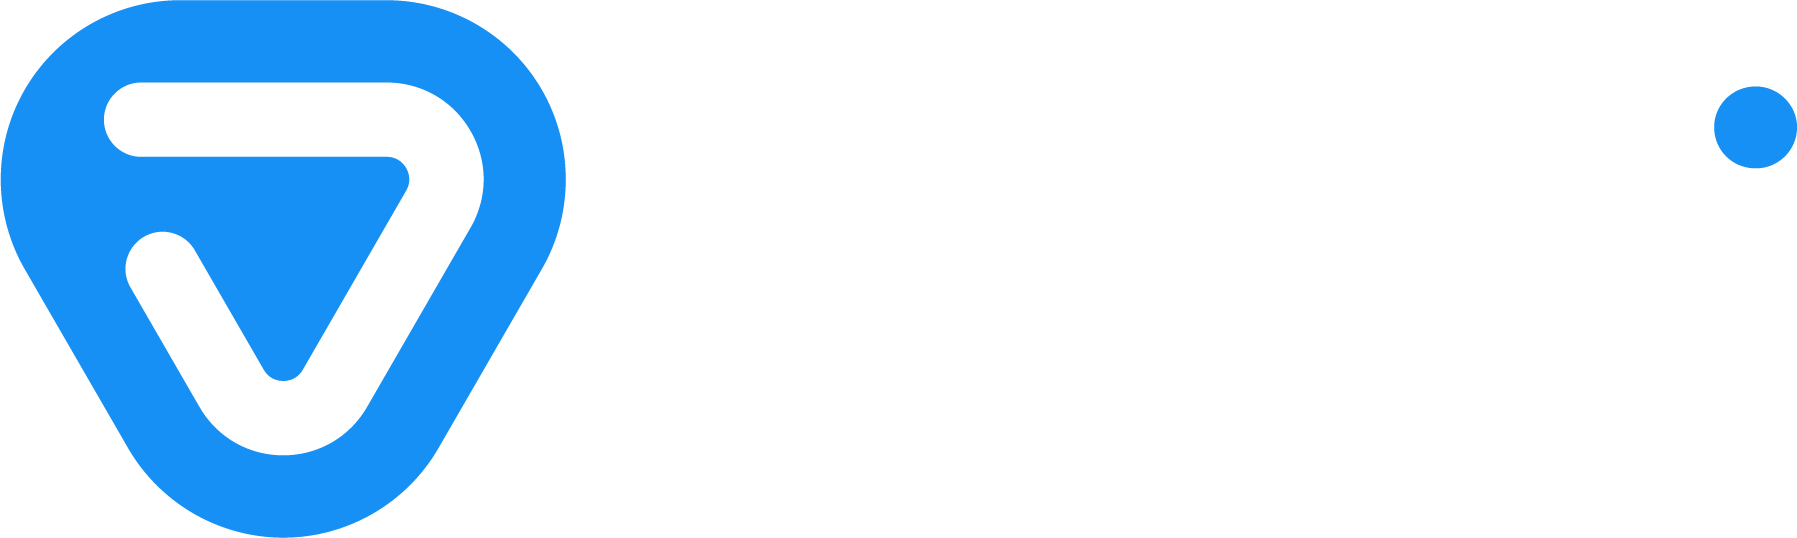 junbi-logo-white